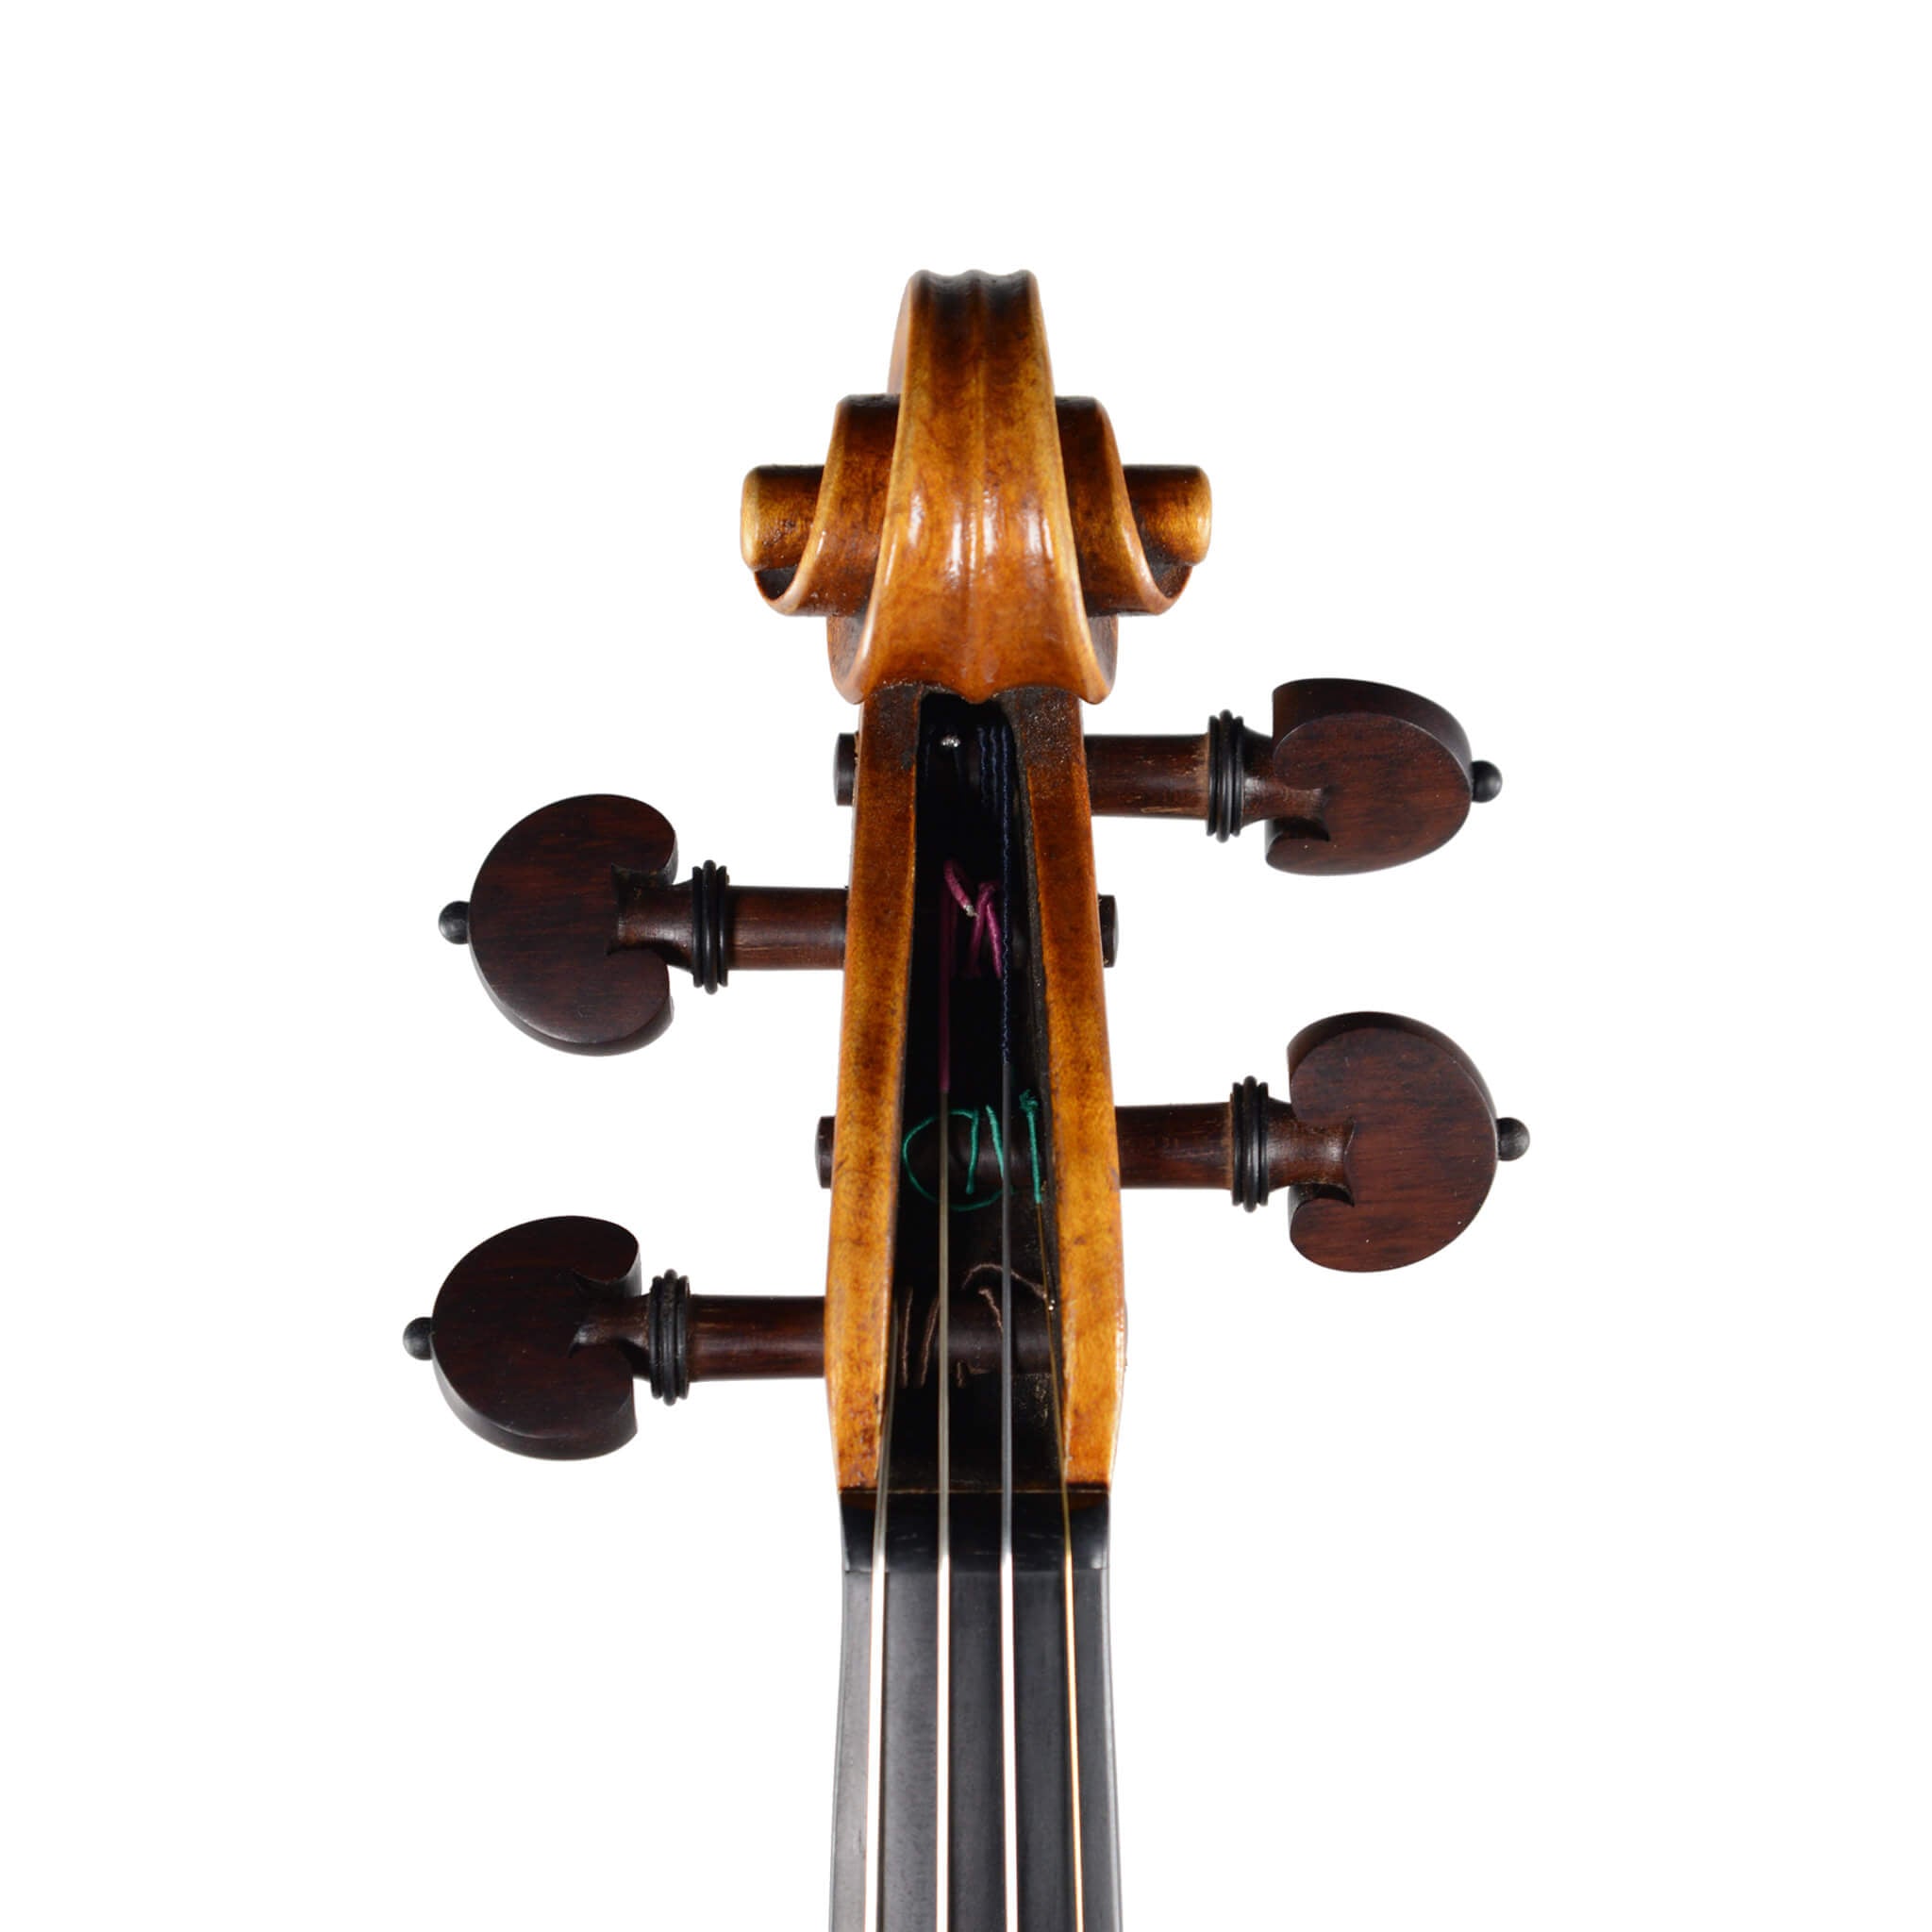 Stefano Gibertoni Stradivari ‘Betts’ Violin Anno 2018